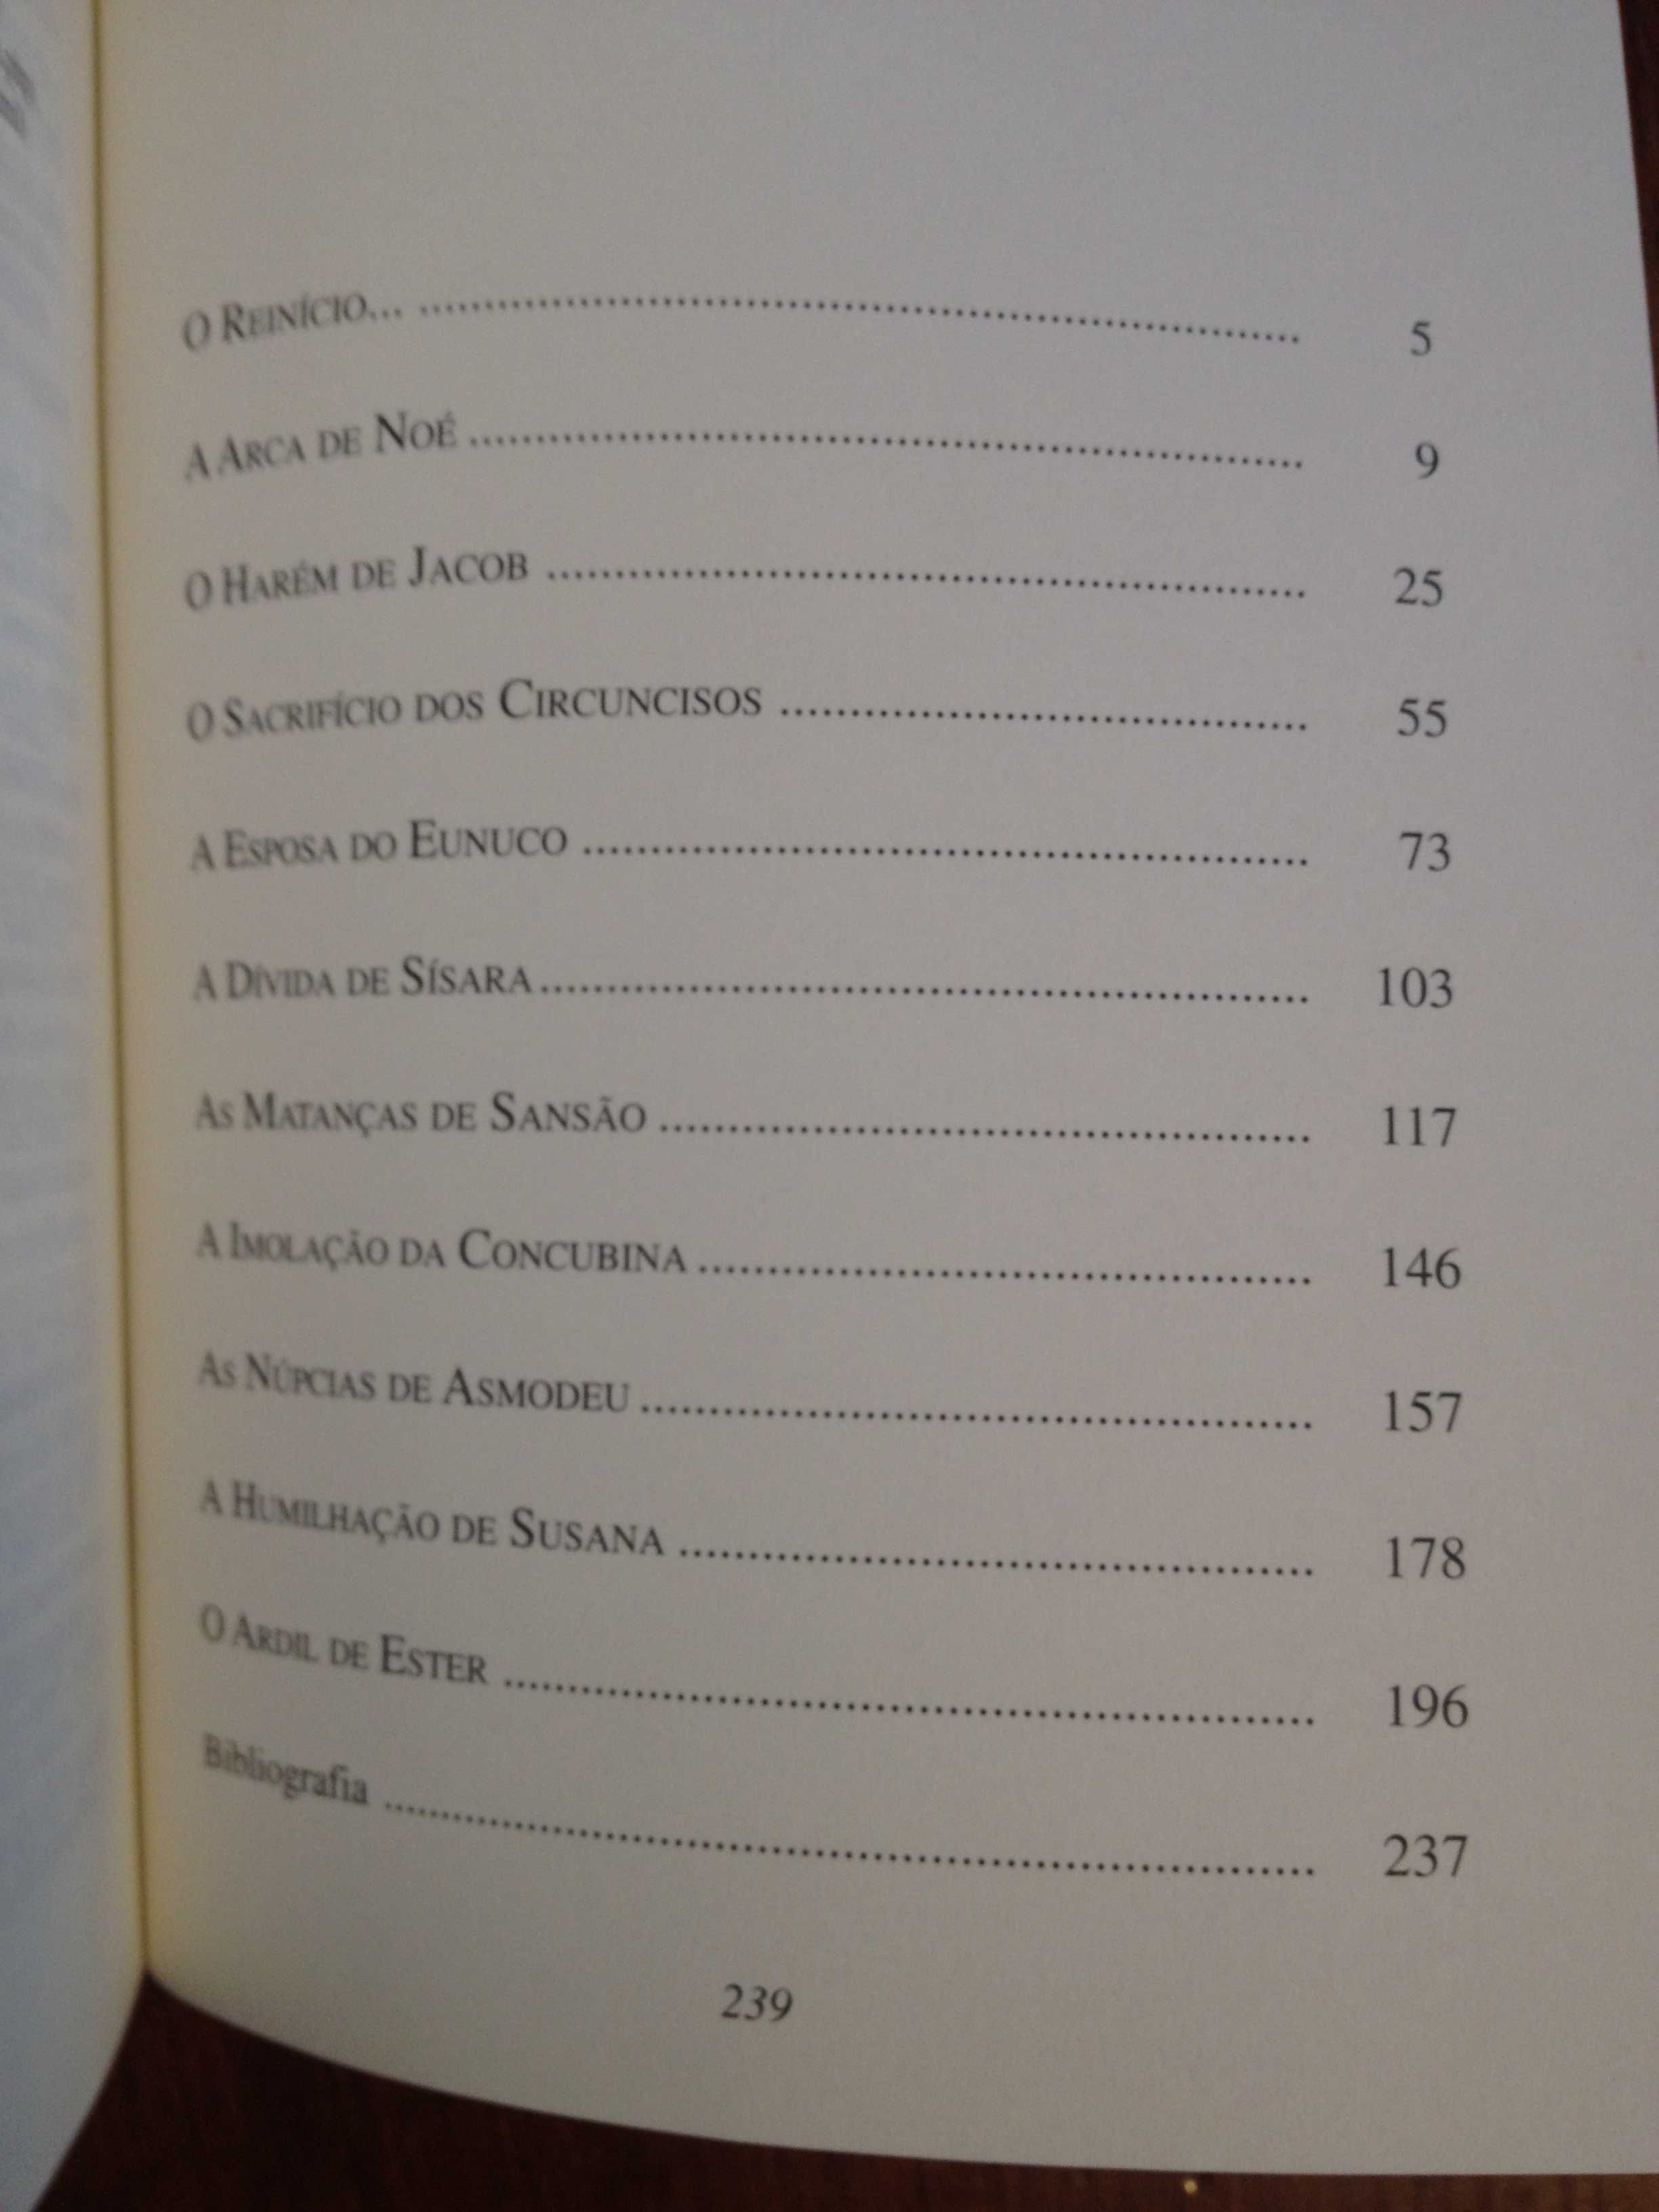 Deana Barroqueiro - Contos Eróticos do Velho Testamento (2 vols.)